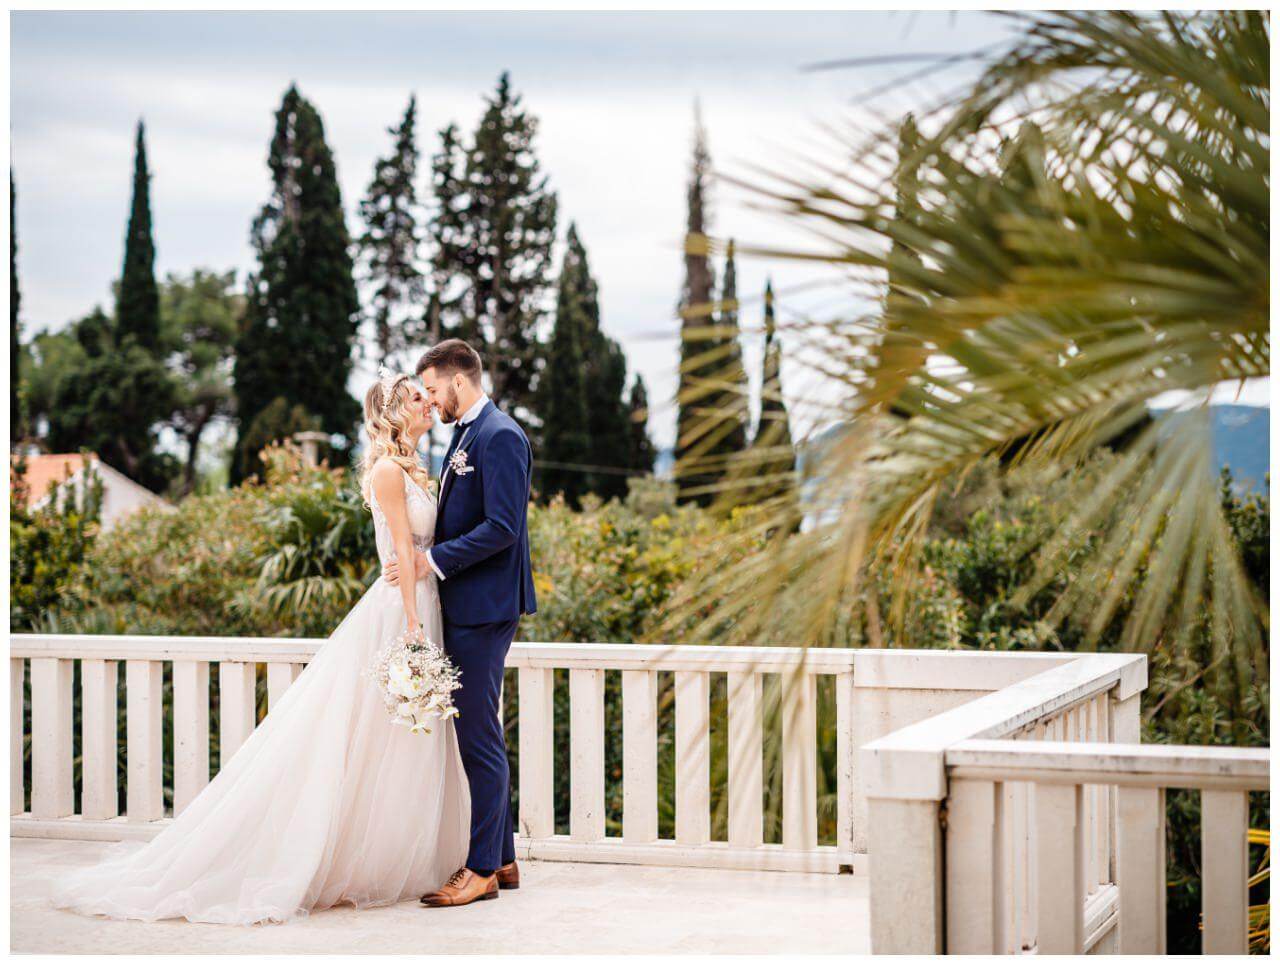 Brautpaar mit Schleierkraut Brautstrauß auf Terrasse im Garten einer Villa in Kroatien Wedding Kroatien, wedding in croatia,hochzeitsplanerin kroatien, hochzeit in kroatien